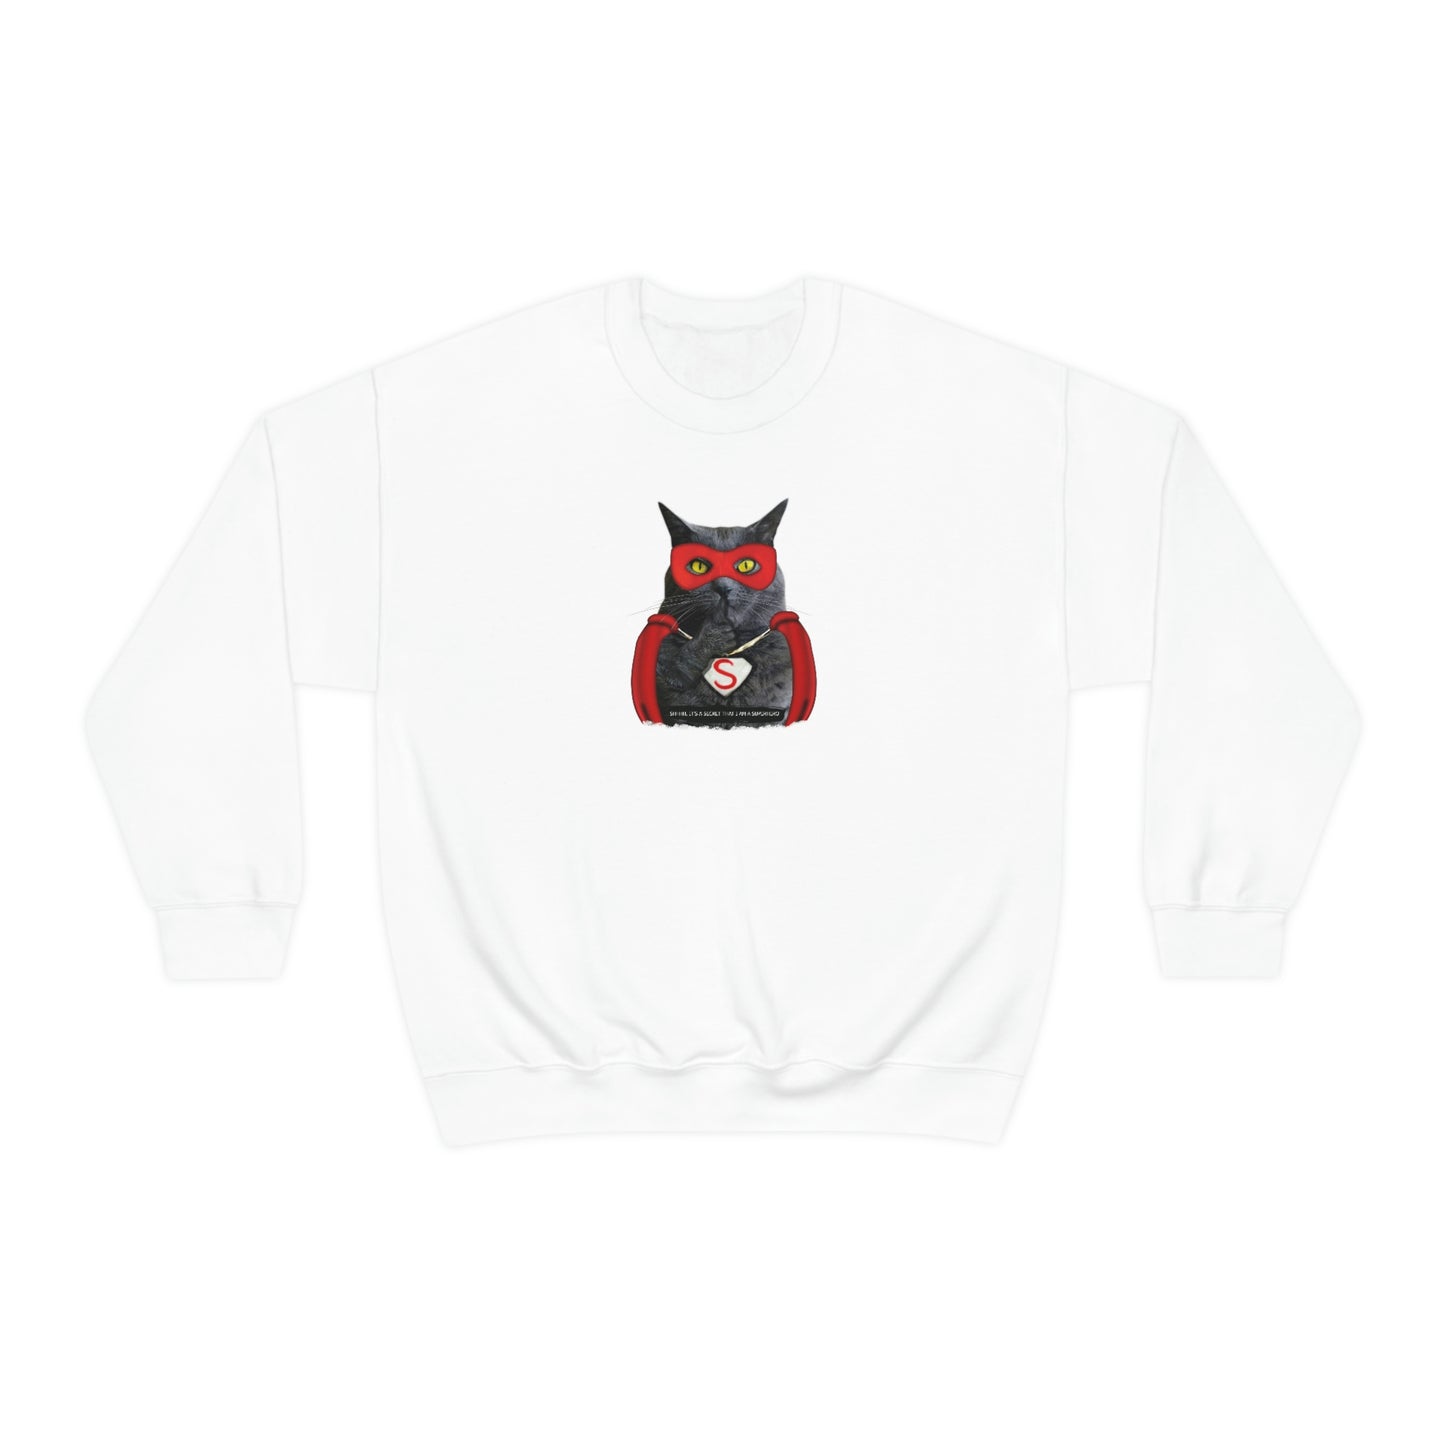 Super Cat Sweatshirt